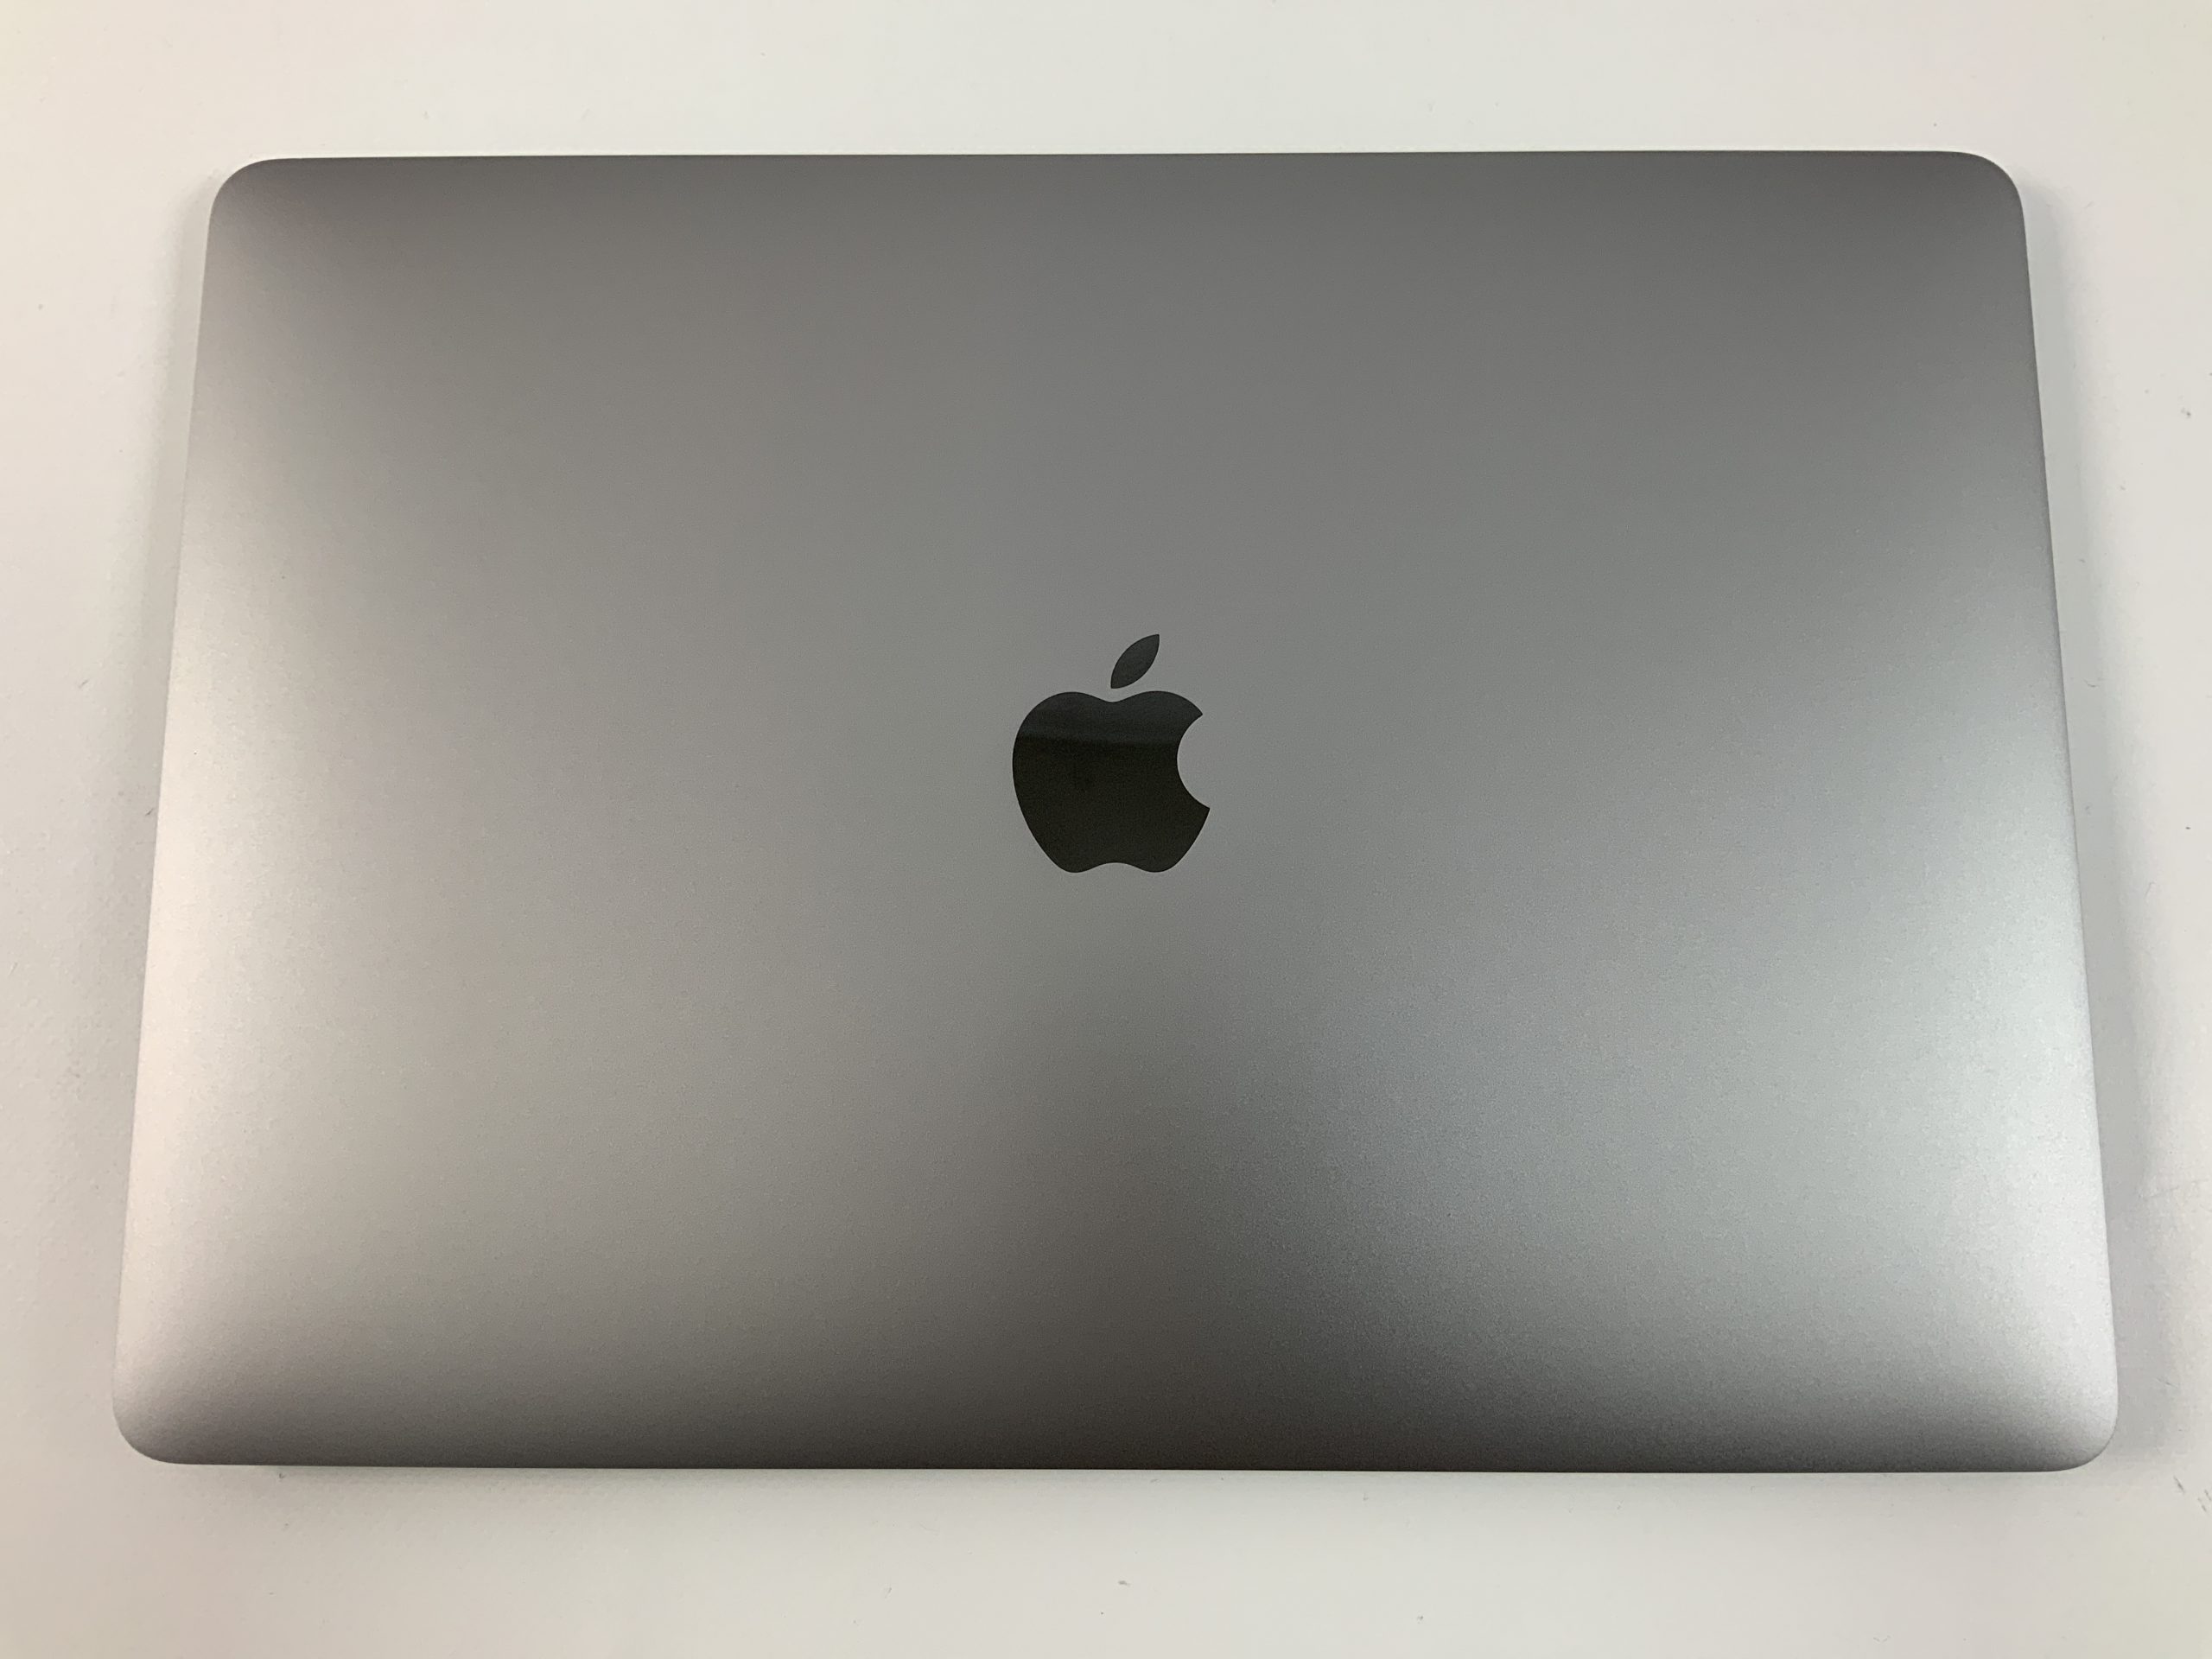 MacBook Air 13" Mid 2019 (Intel Core i5 1.6 GHz 8 GB RAM 512 GB SSD), Space Gray, Intel Core i5 1.6 GHz, 8 GB RAM, 512 GB SSD, immagine 3